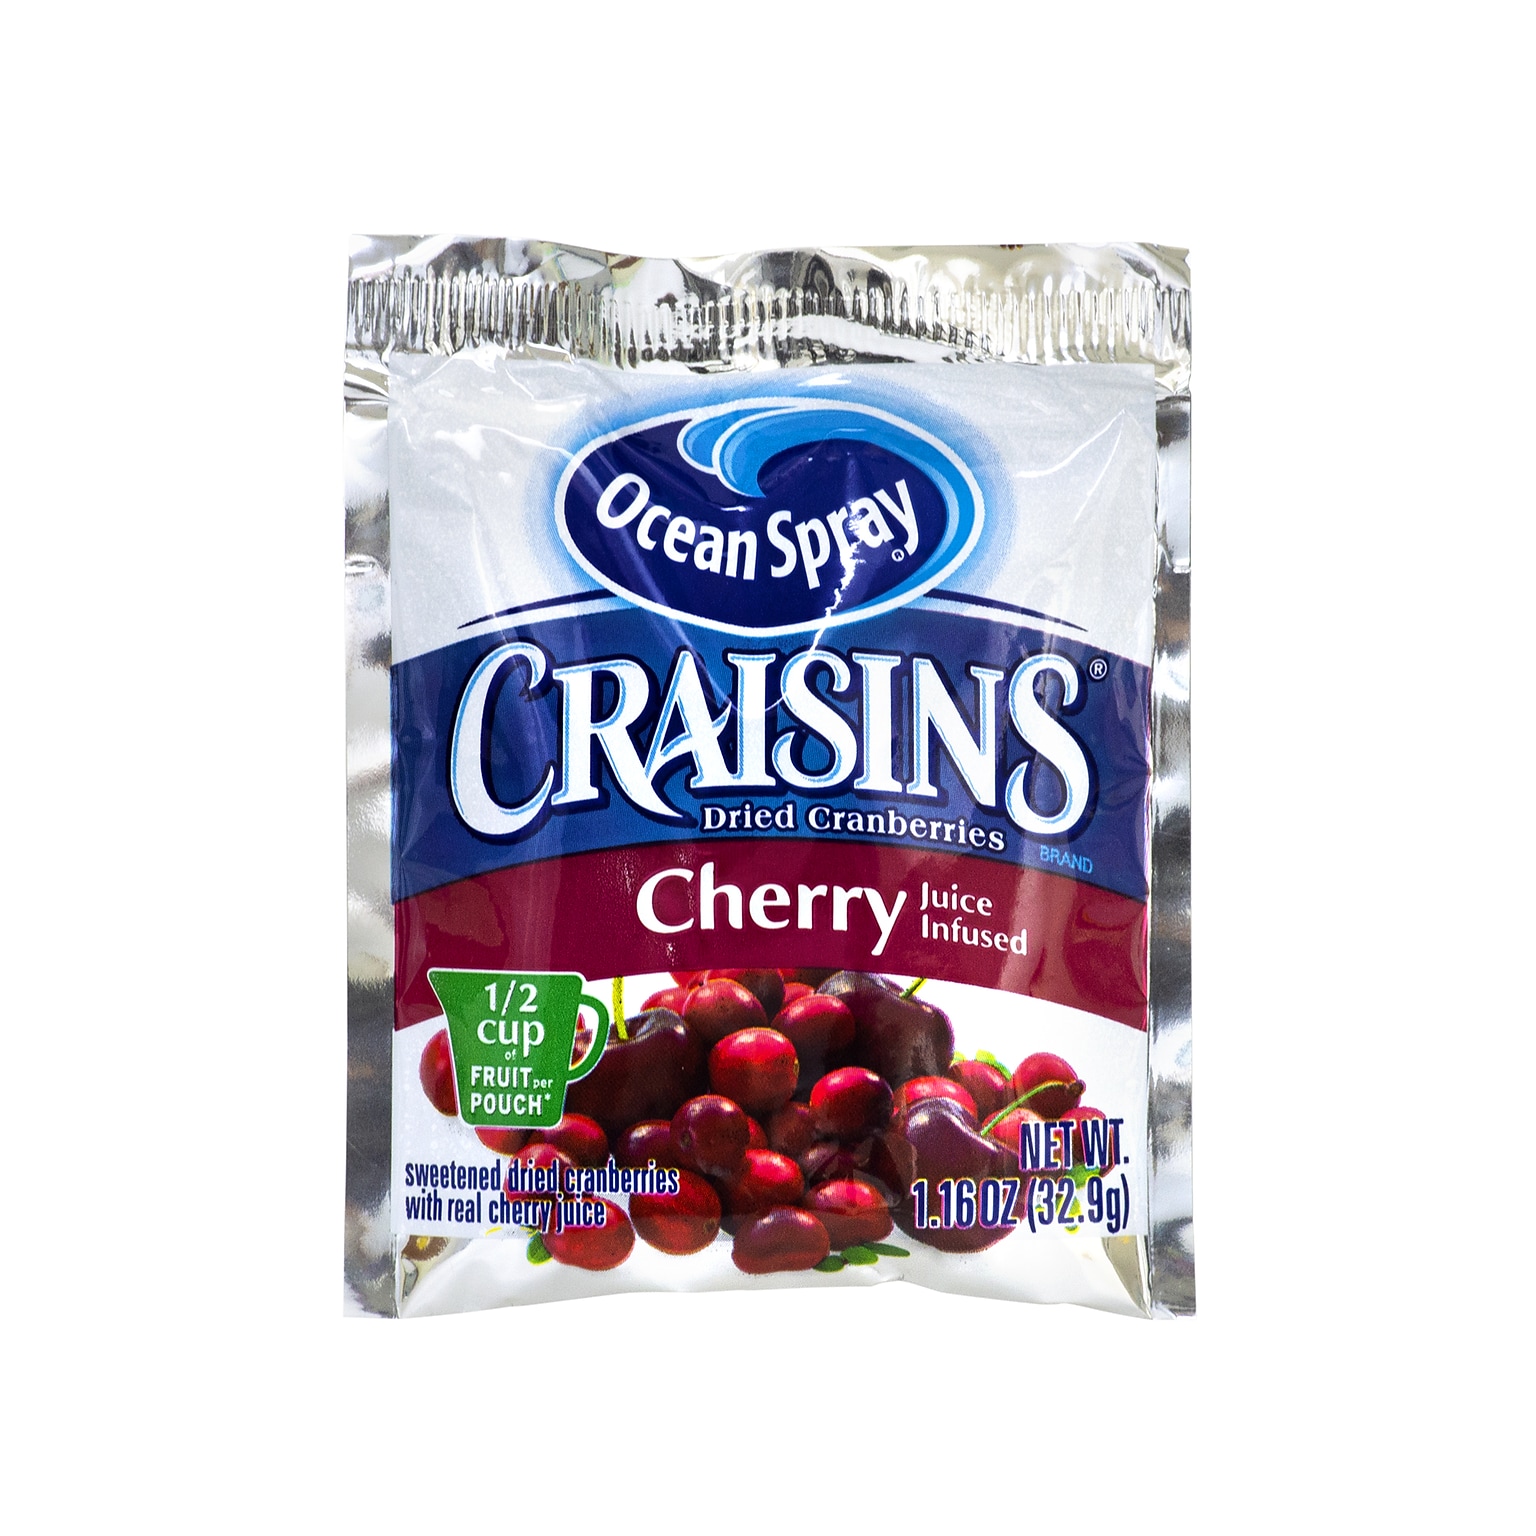 Ocean Spray Craisins Gluten Free Cherry Dried Cranberries, 1.16 oz., 3 Packs/Box (307-00077)